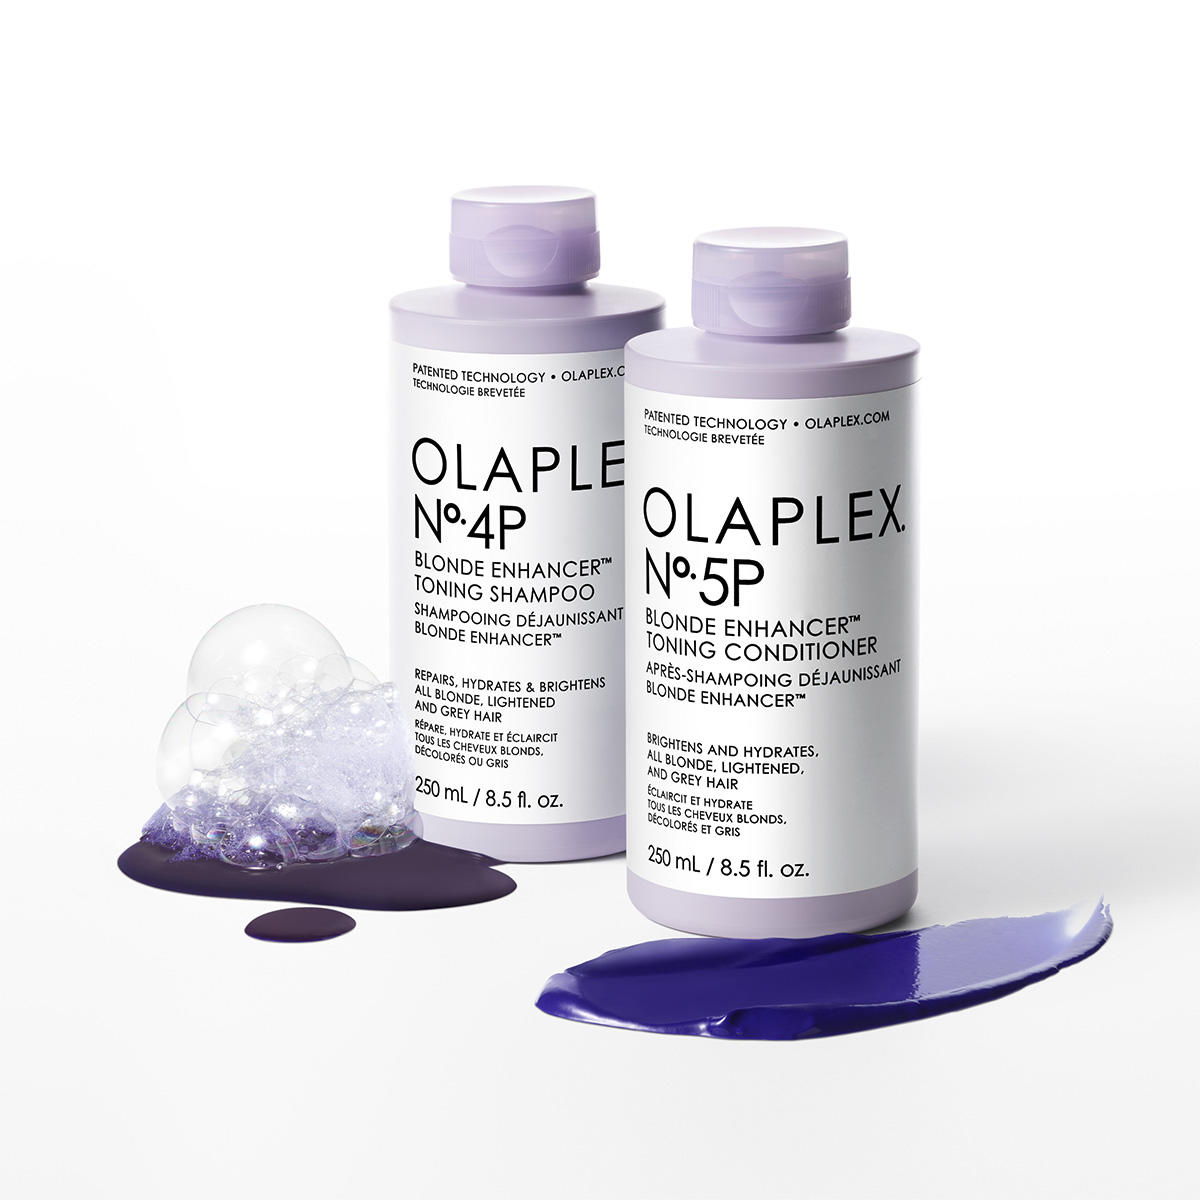 Olaplex Blonde Enhancer Toning Conditioner No. 5P 250 ml - 4